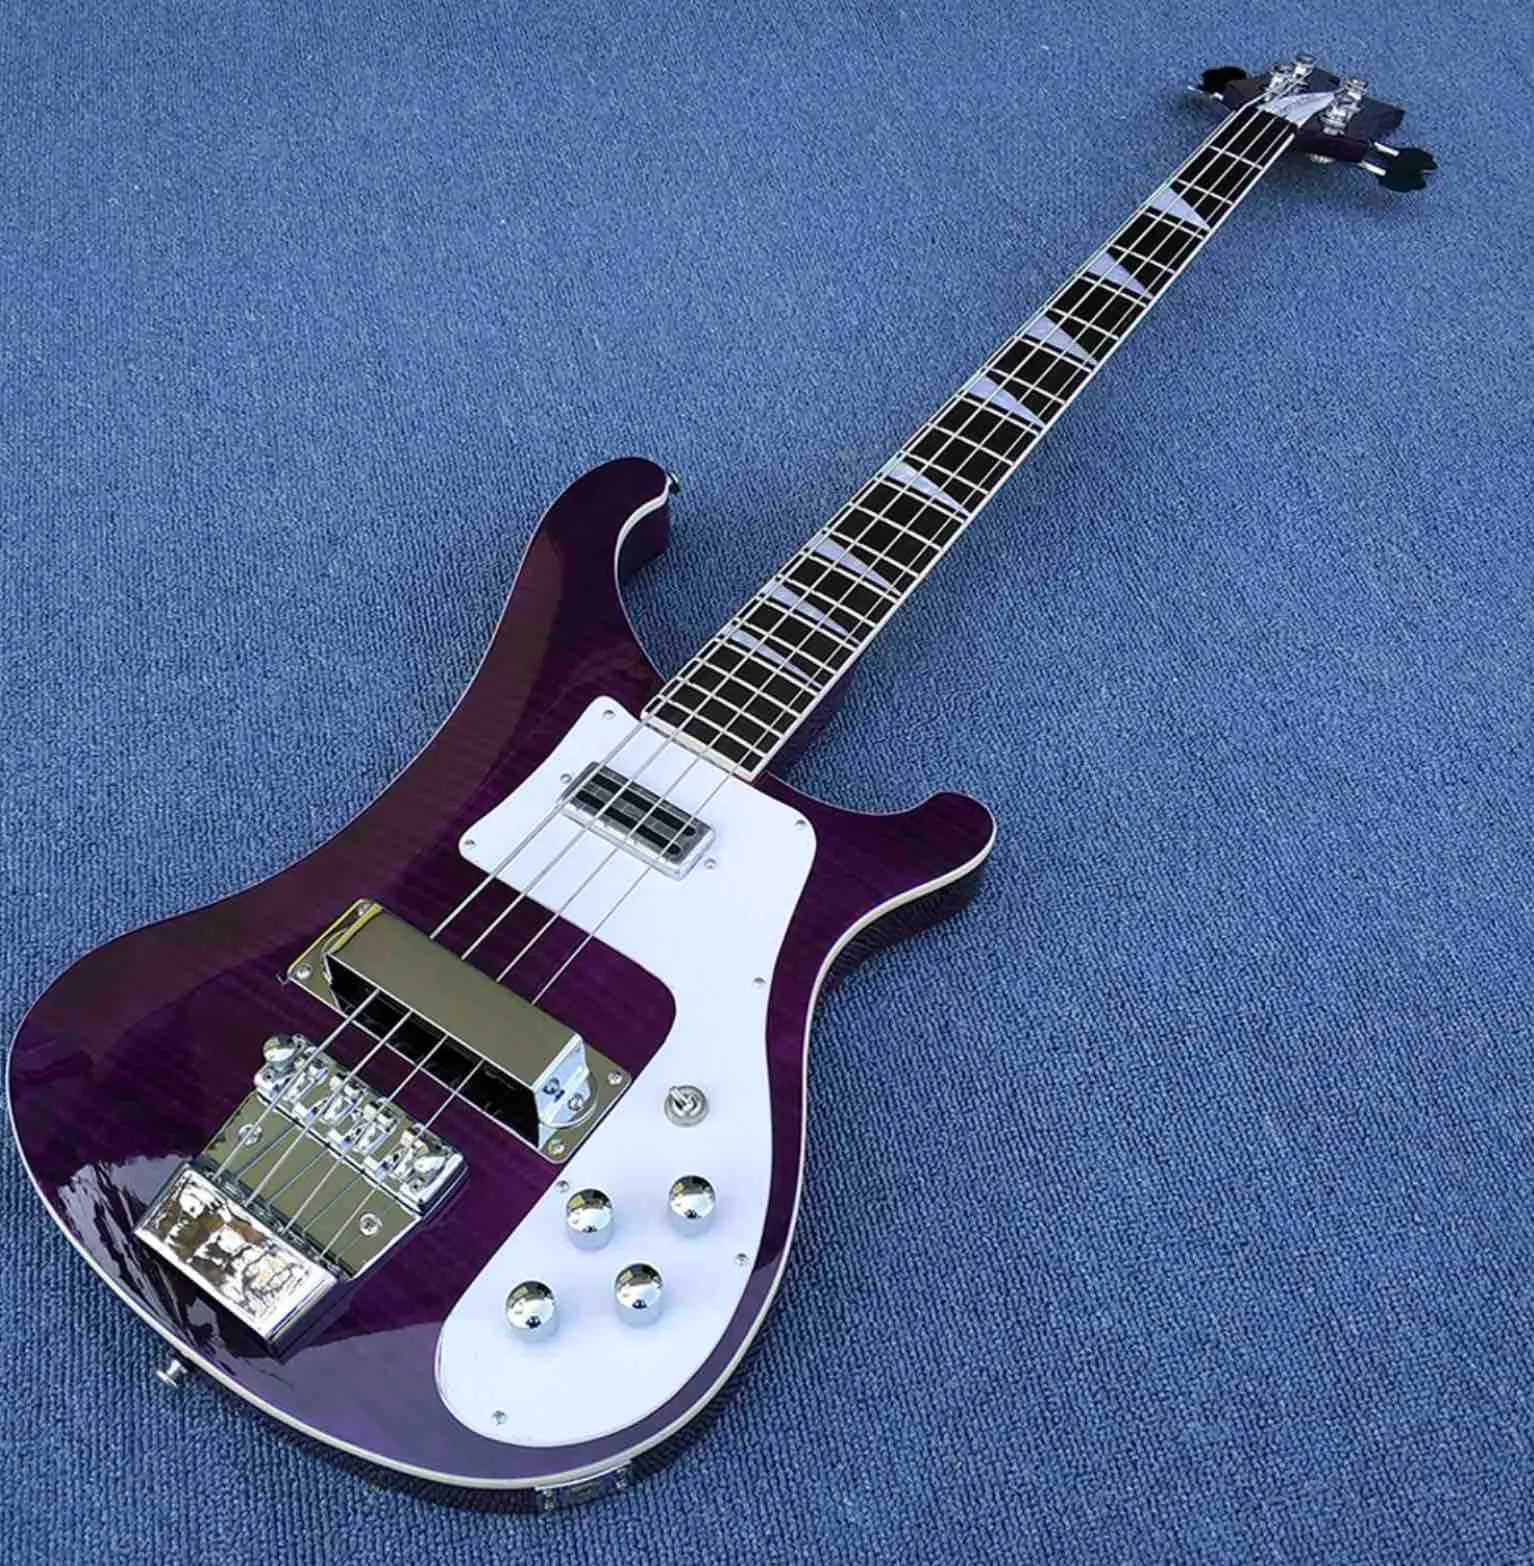 2020 guitarra eléctrica de alta calidad Rick 4003-4 cuerdas bajo pintura púrpura con tapa de arce flameado envío gratis